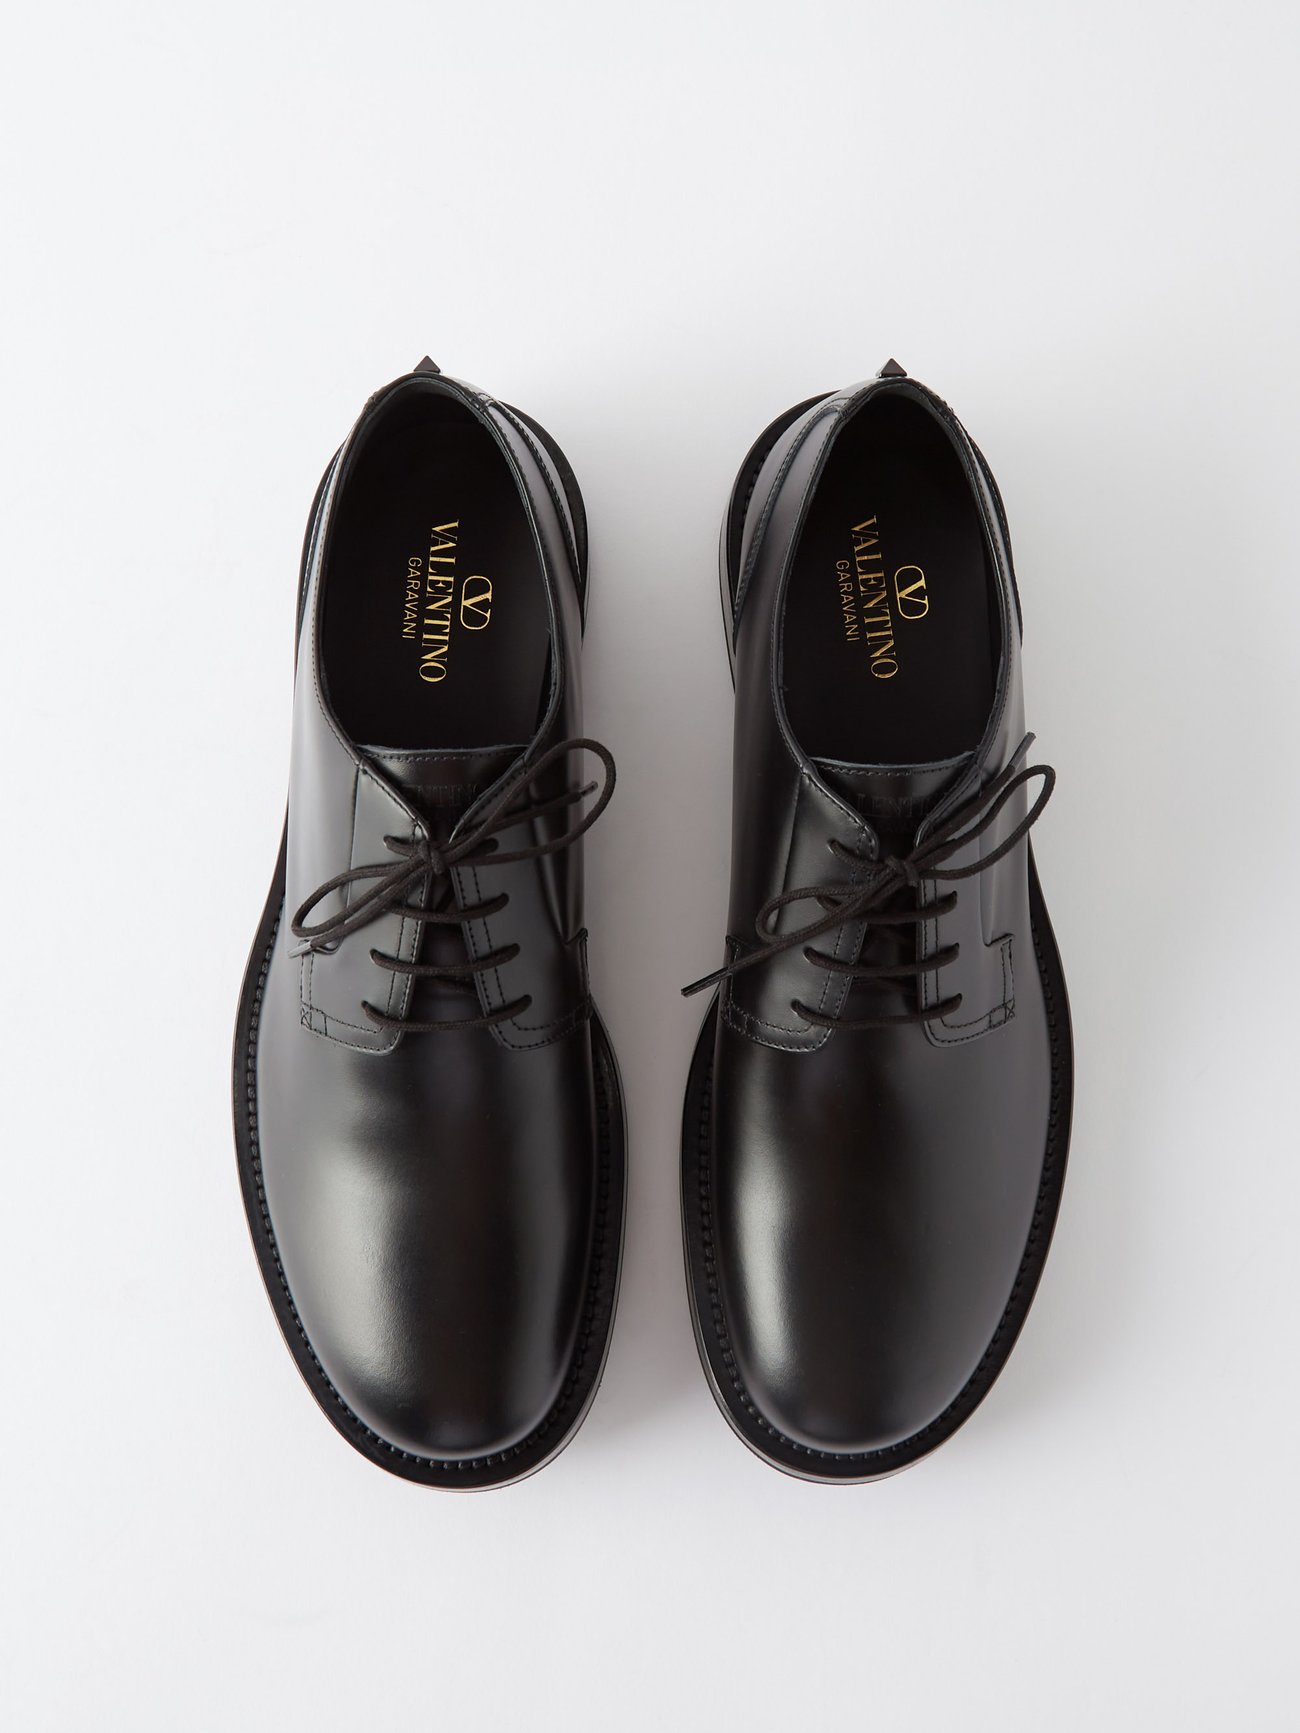 H&M Men's Black Derby Shoes